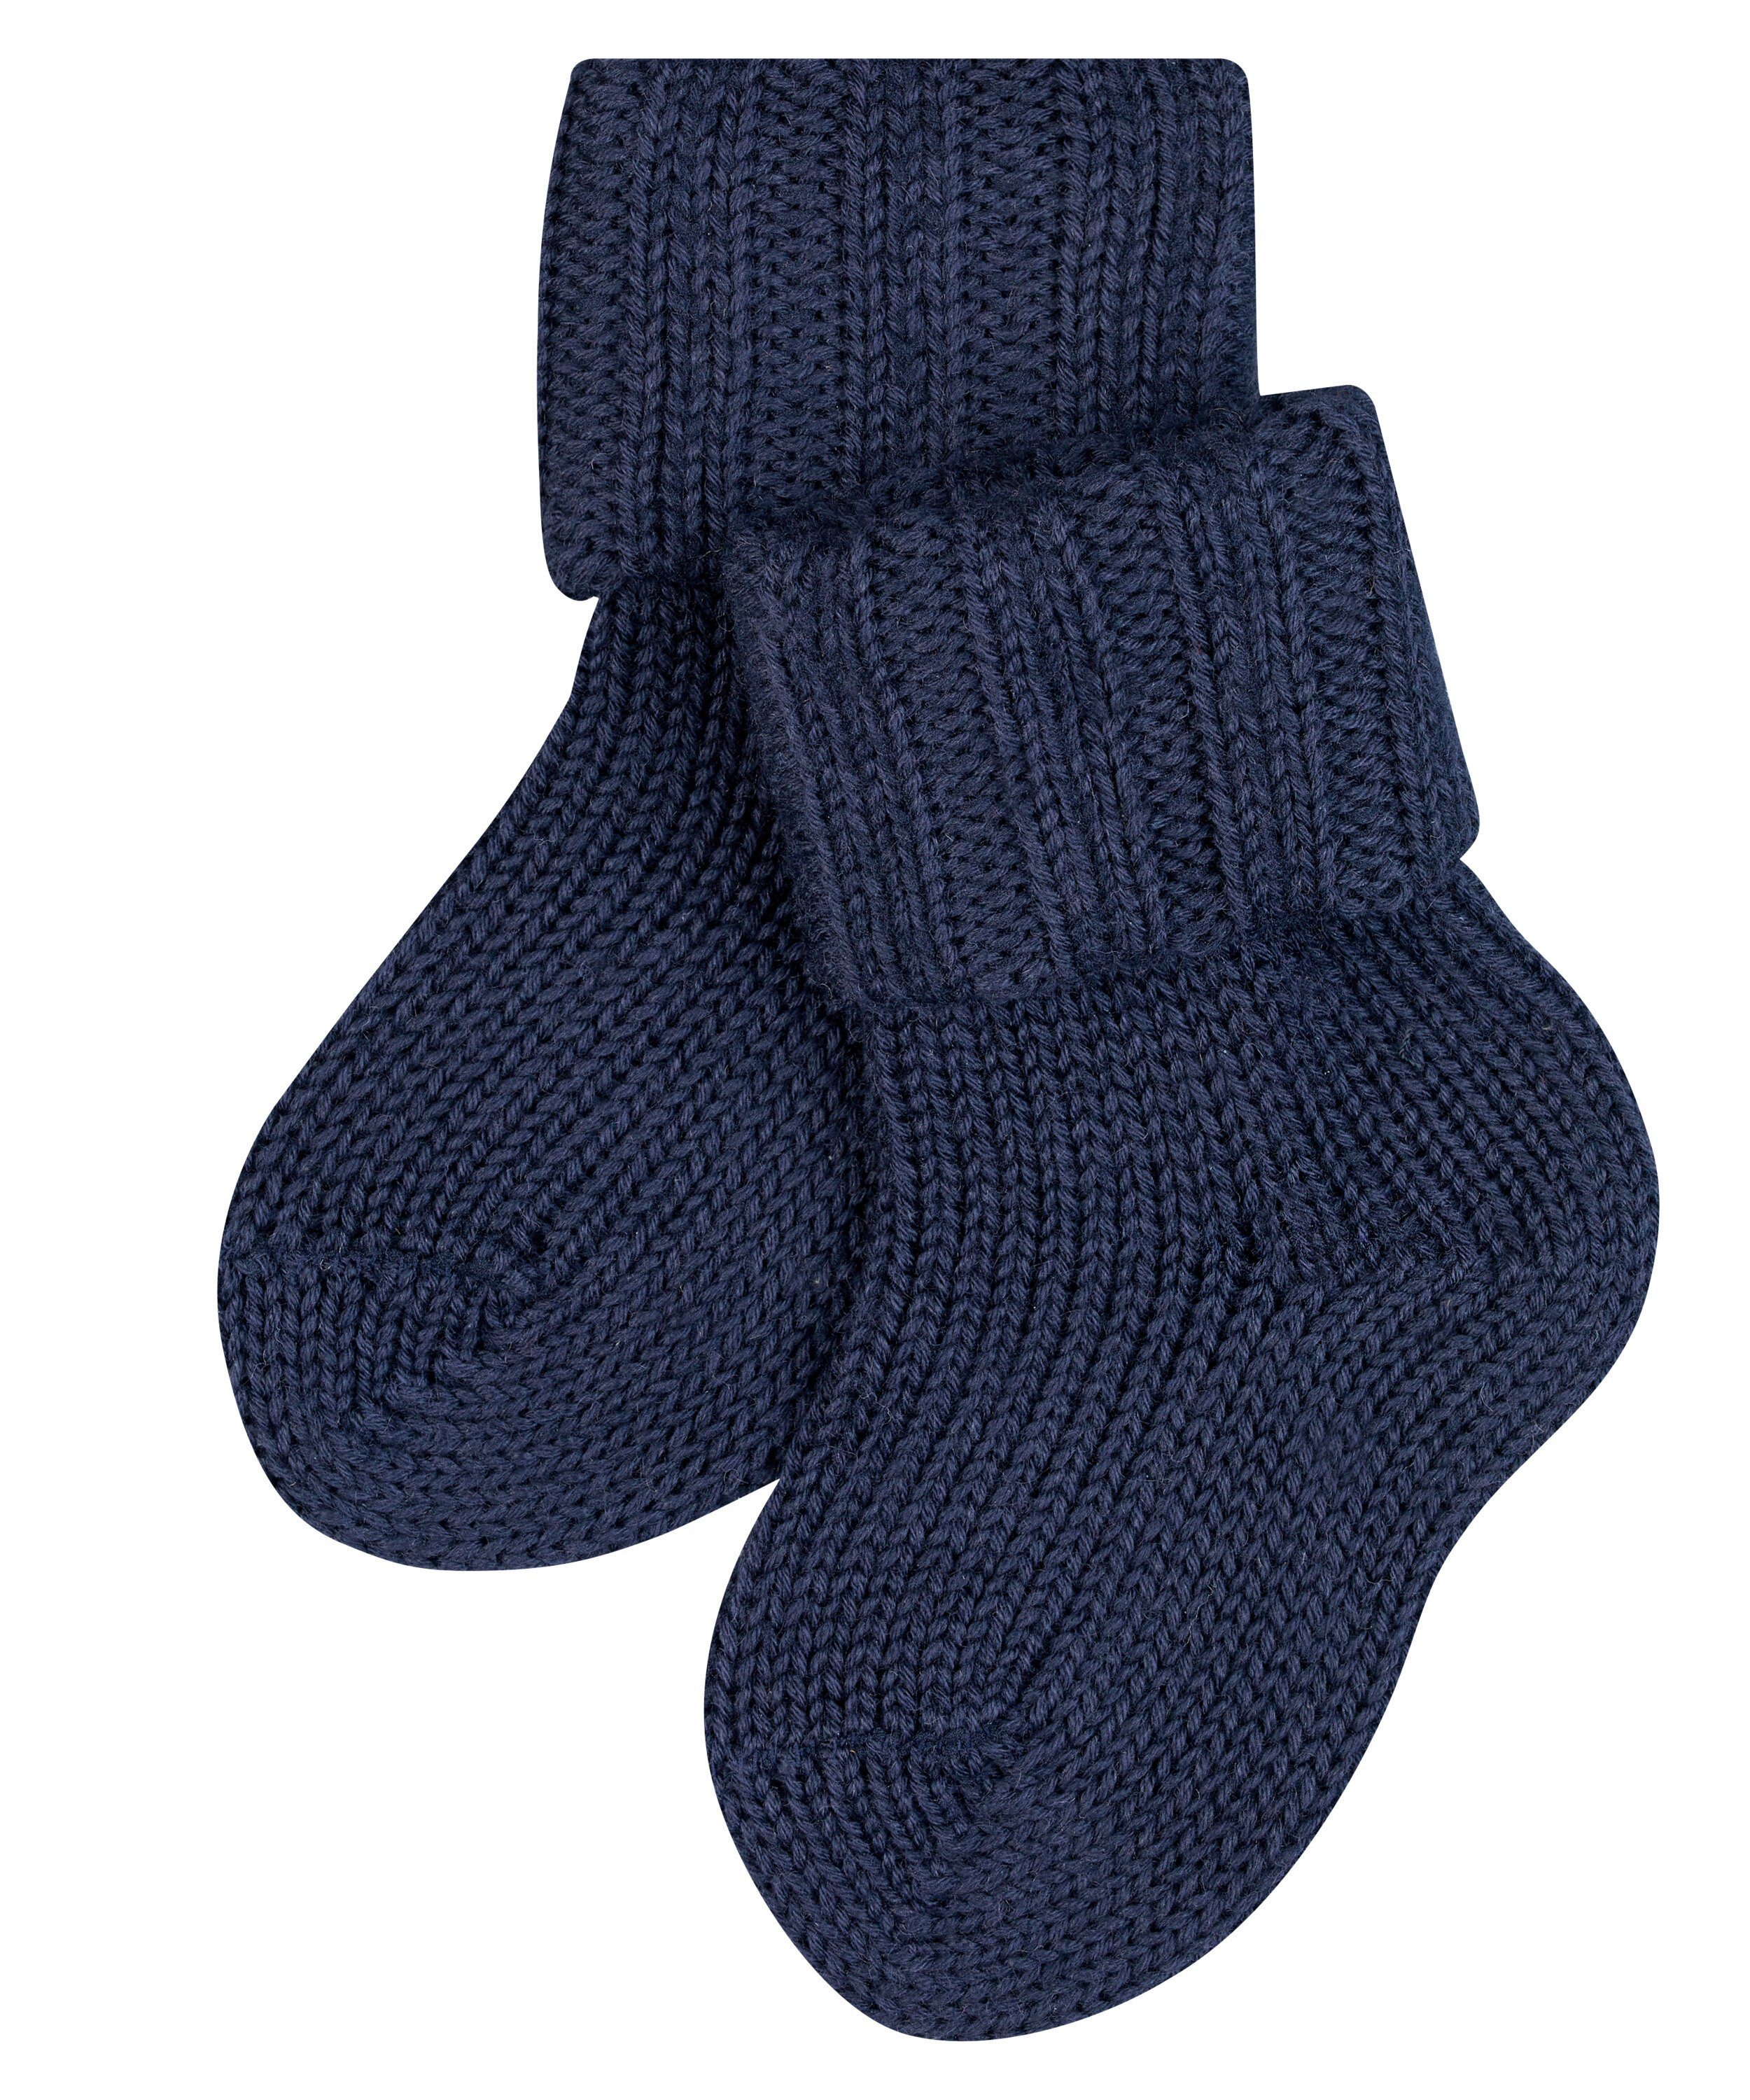 (6370) Socken Flausch FALKE dark (1-Paar) navy